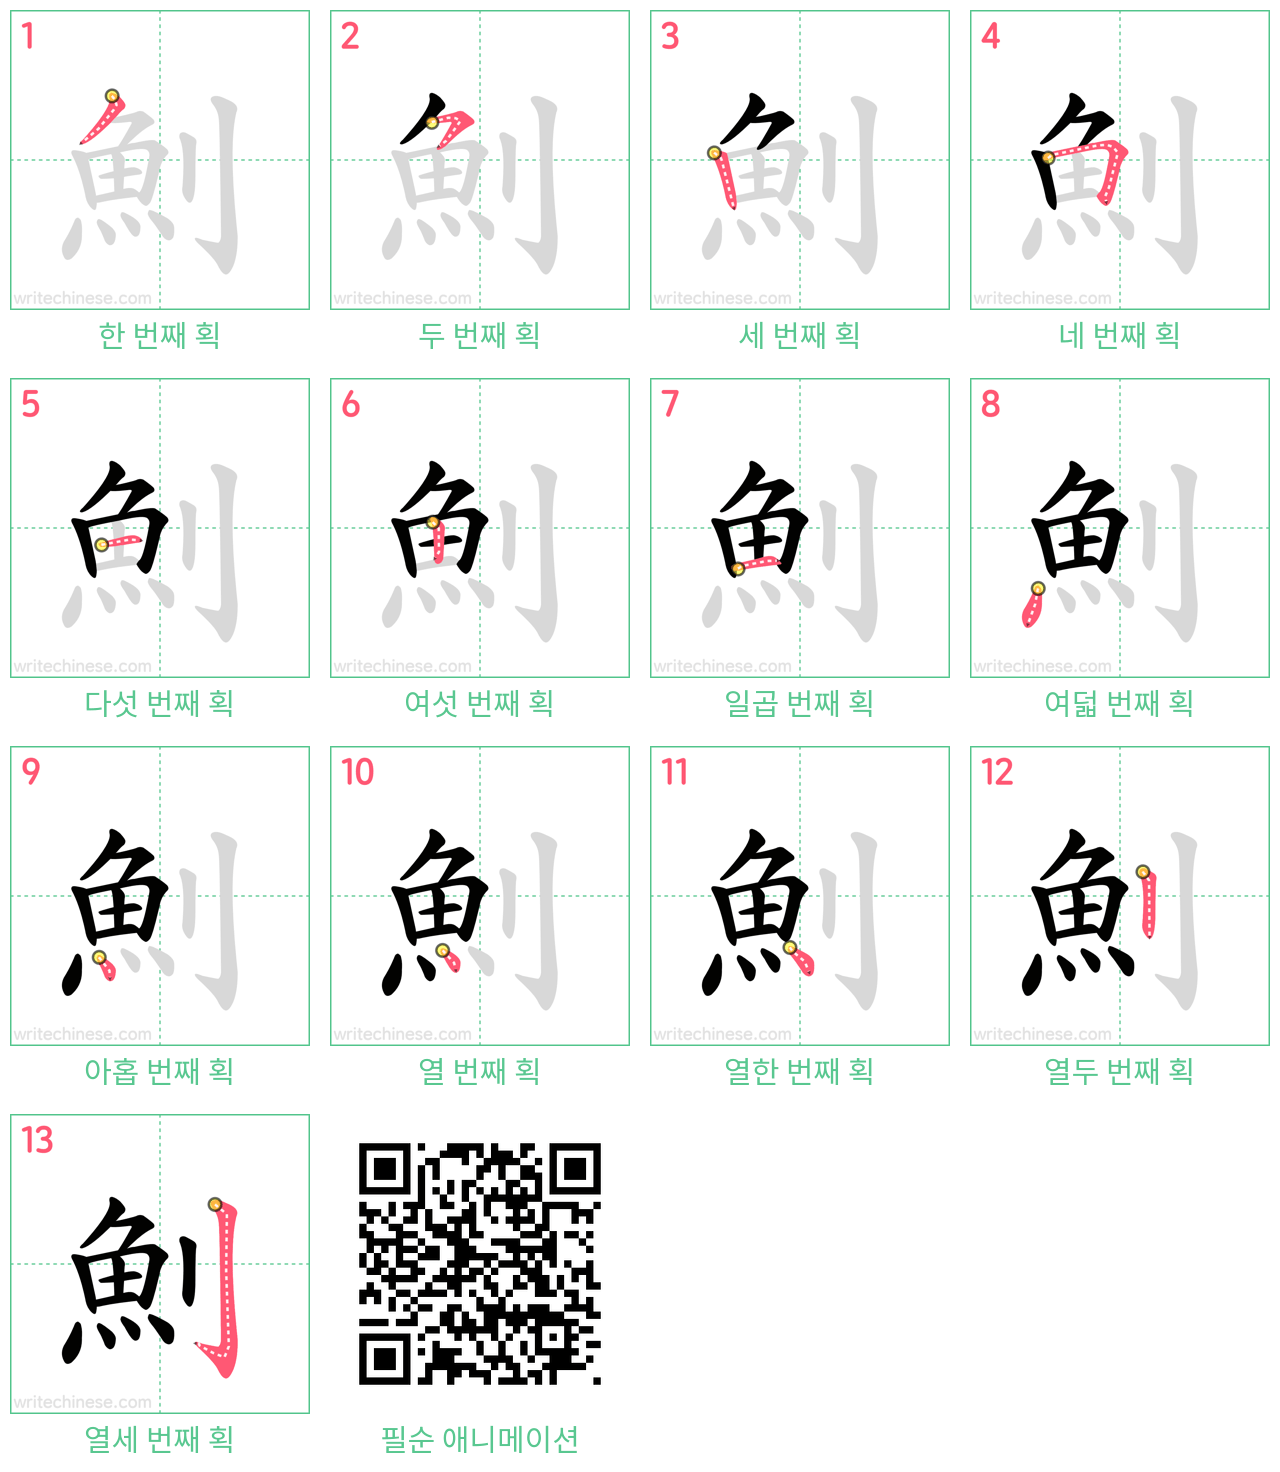 魝 step-by-step stroke order diagrams